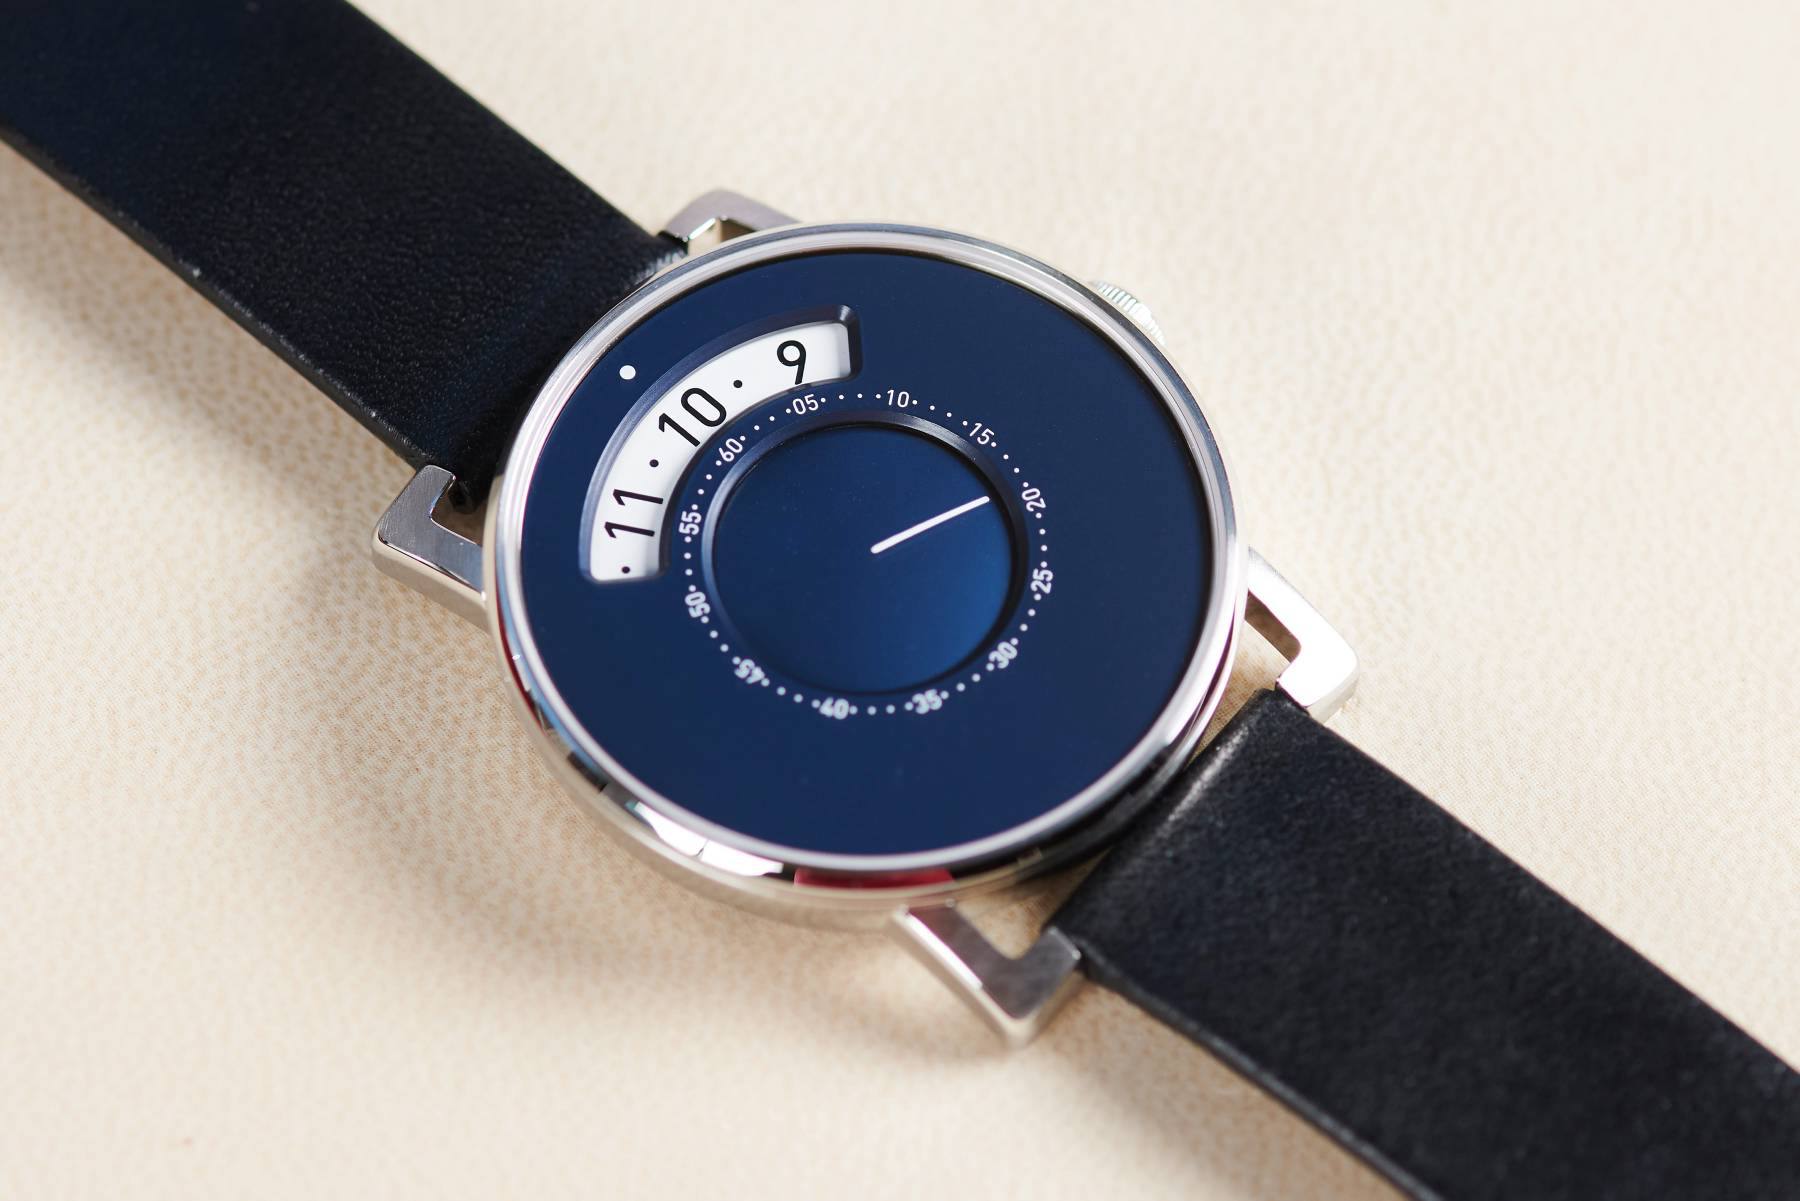 La nouvelle montre MIH Gaia destinee a financer la sauvegarde du patrimoine horloger, présentée en 2019 par le Musée international d'horlogerie. 